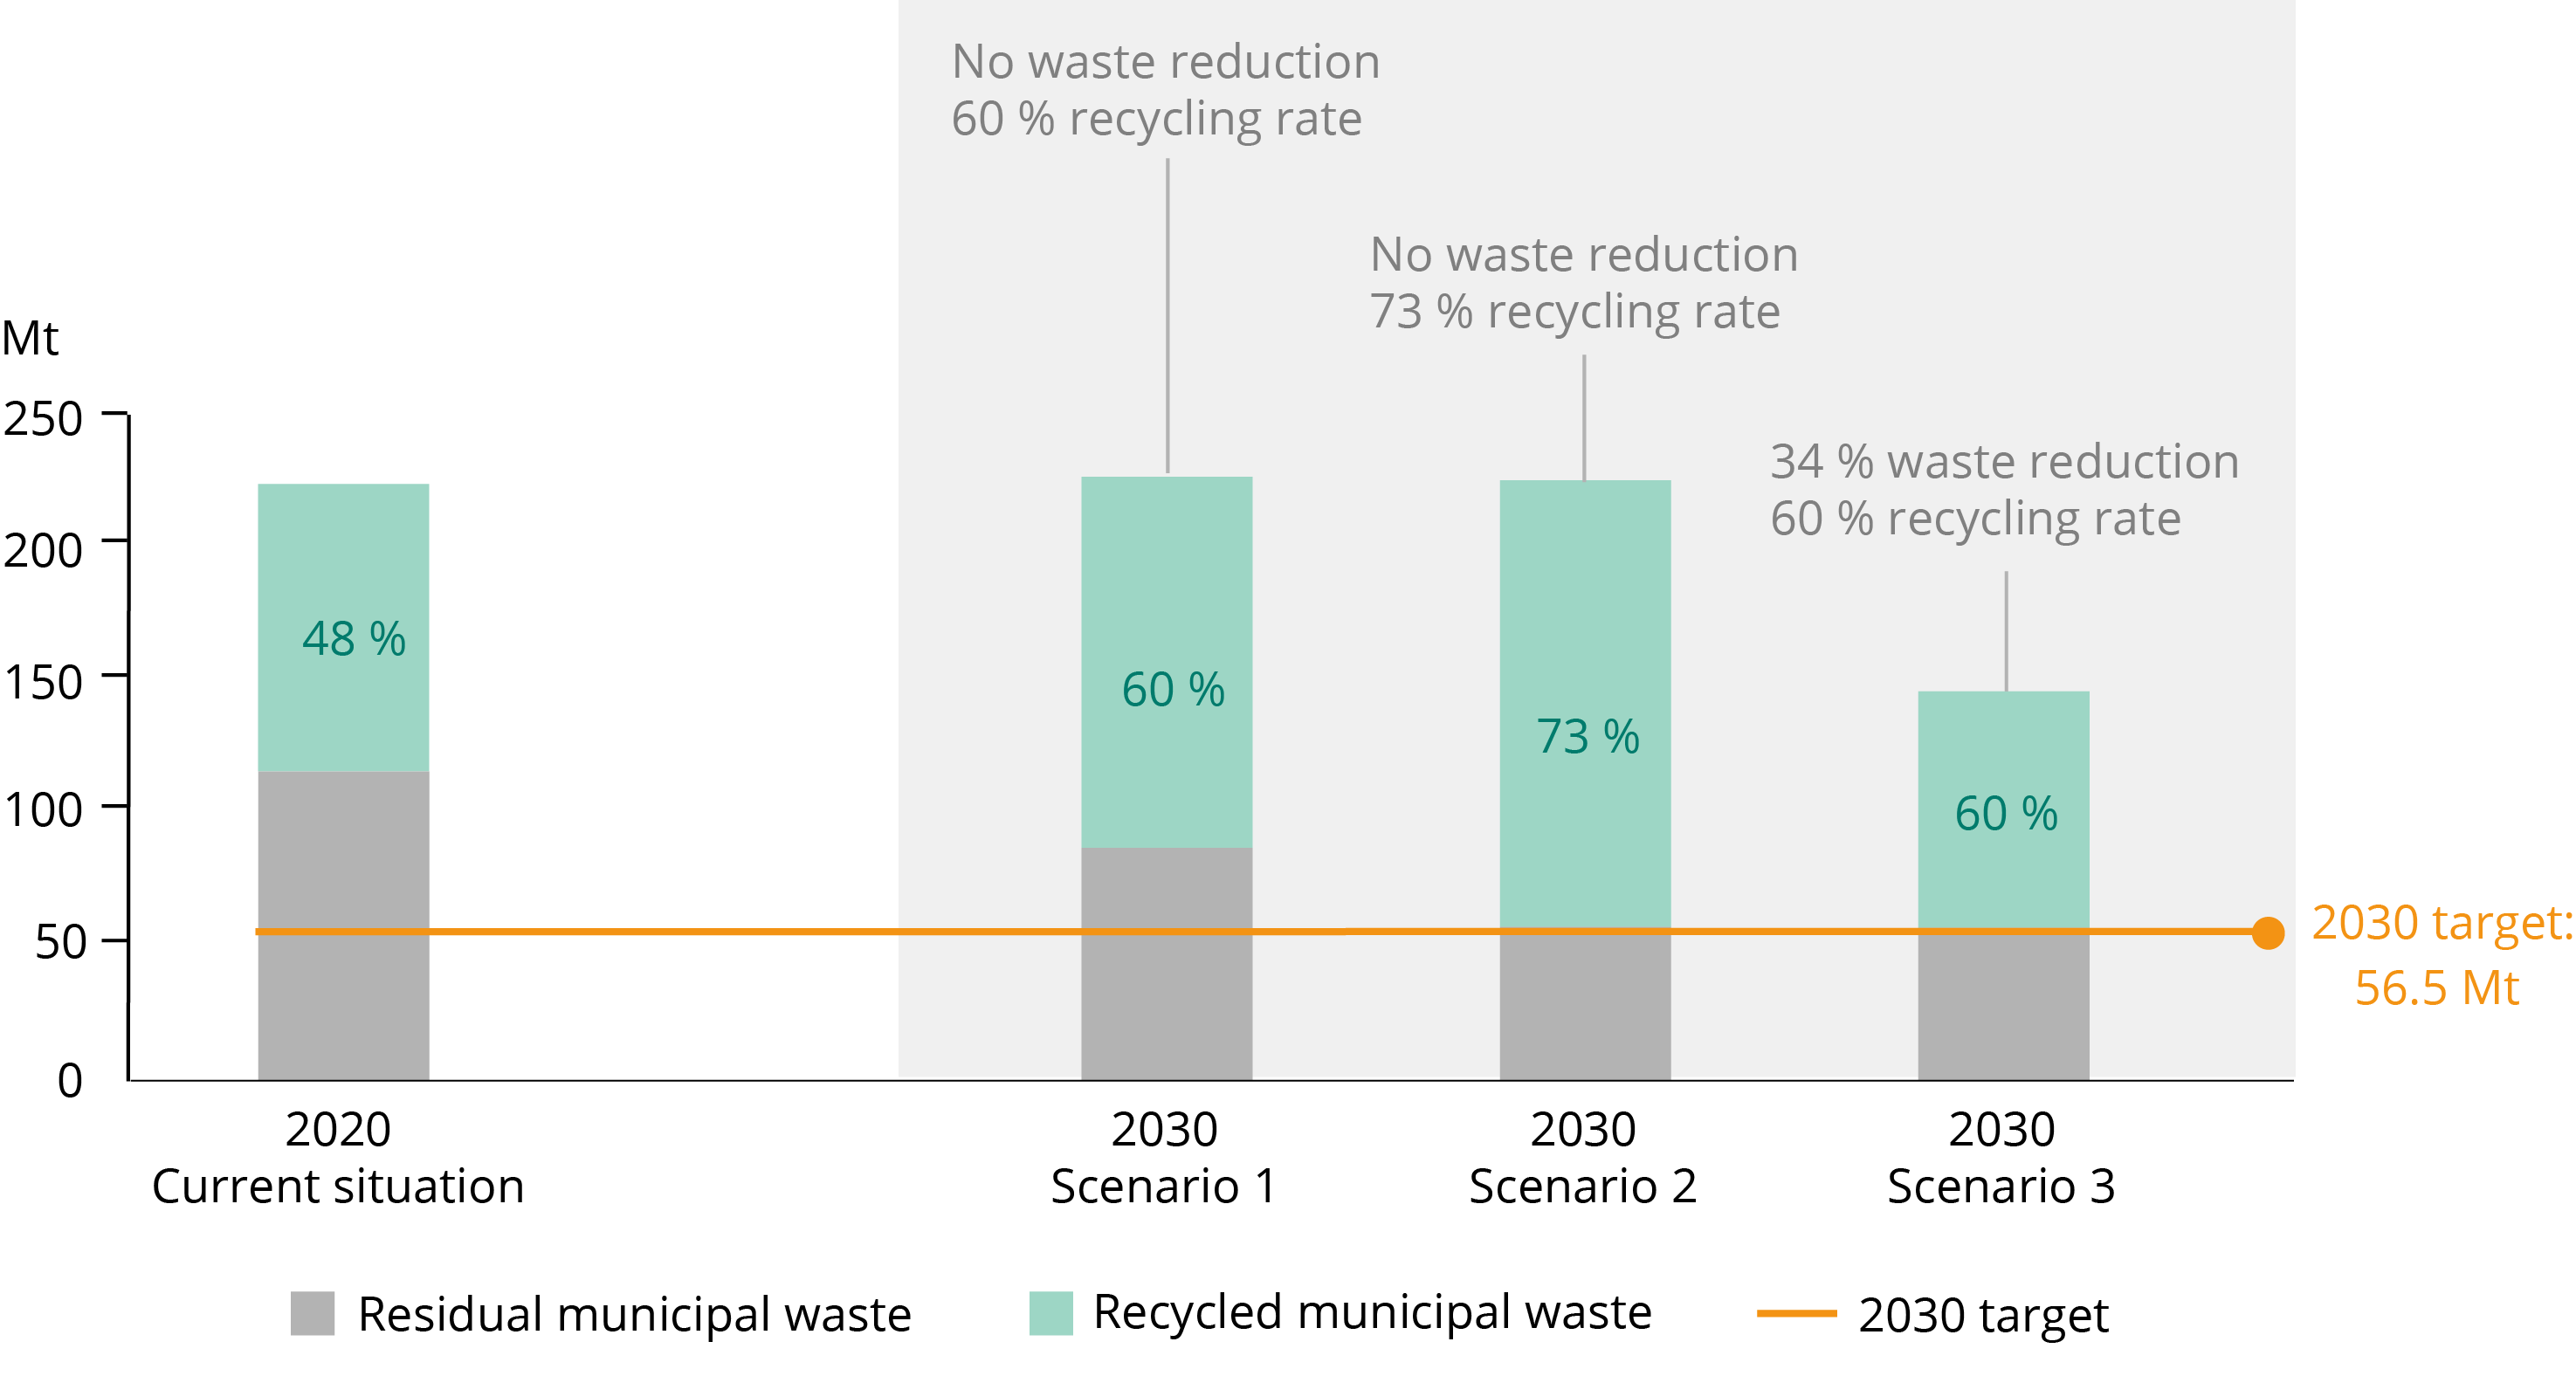 Figure 6. Current municipal waste generation versus three future scenarios